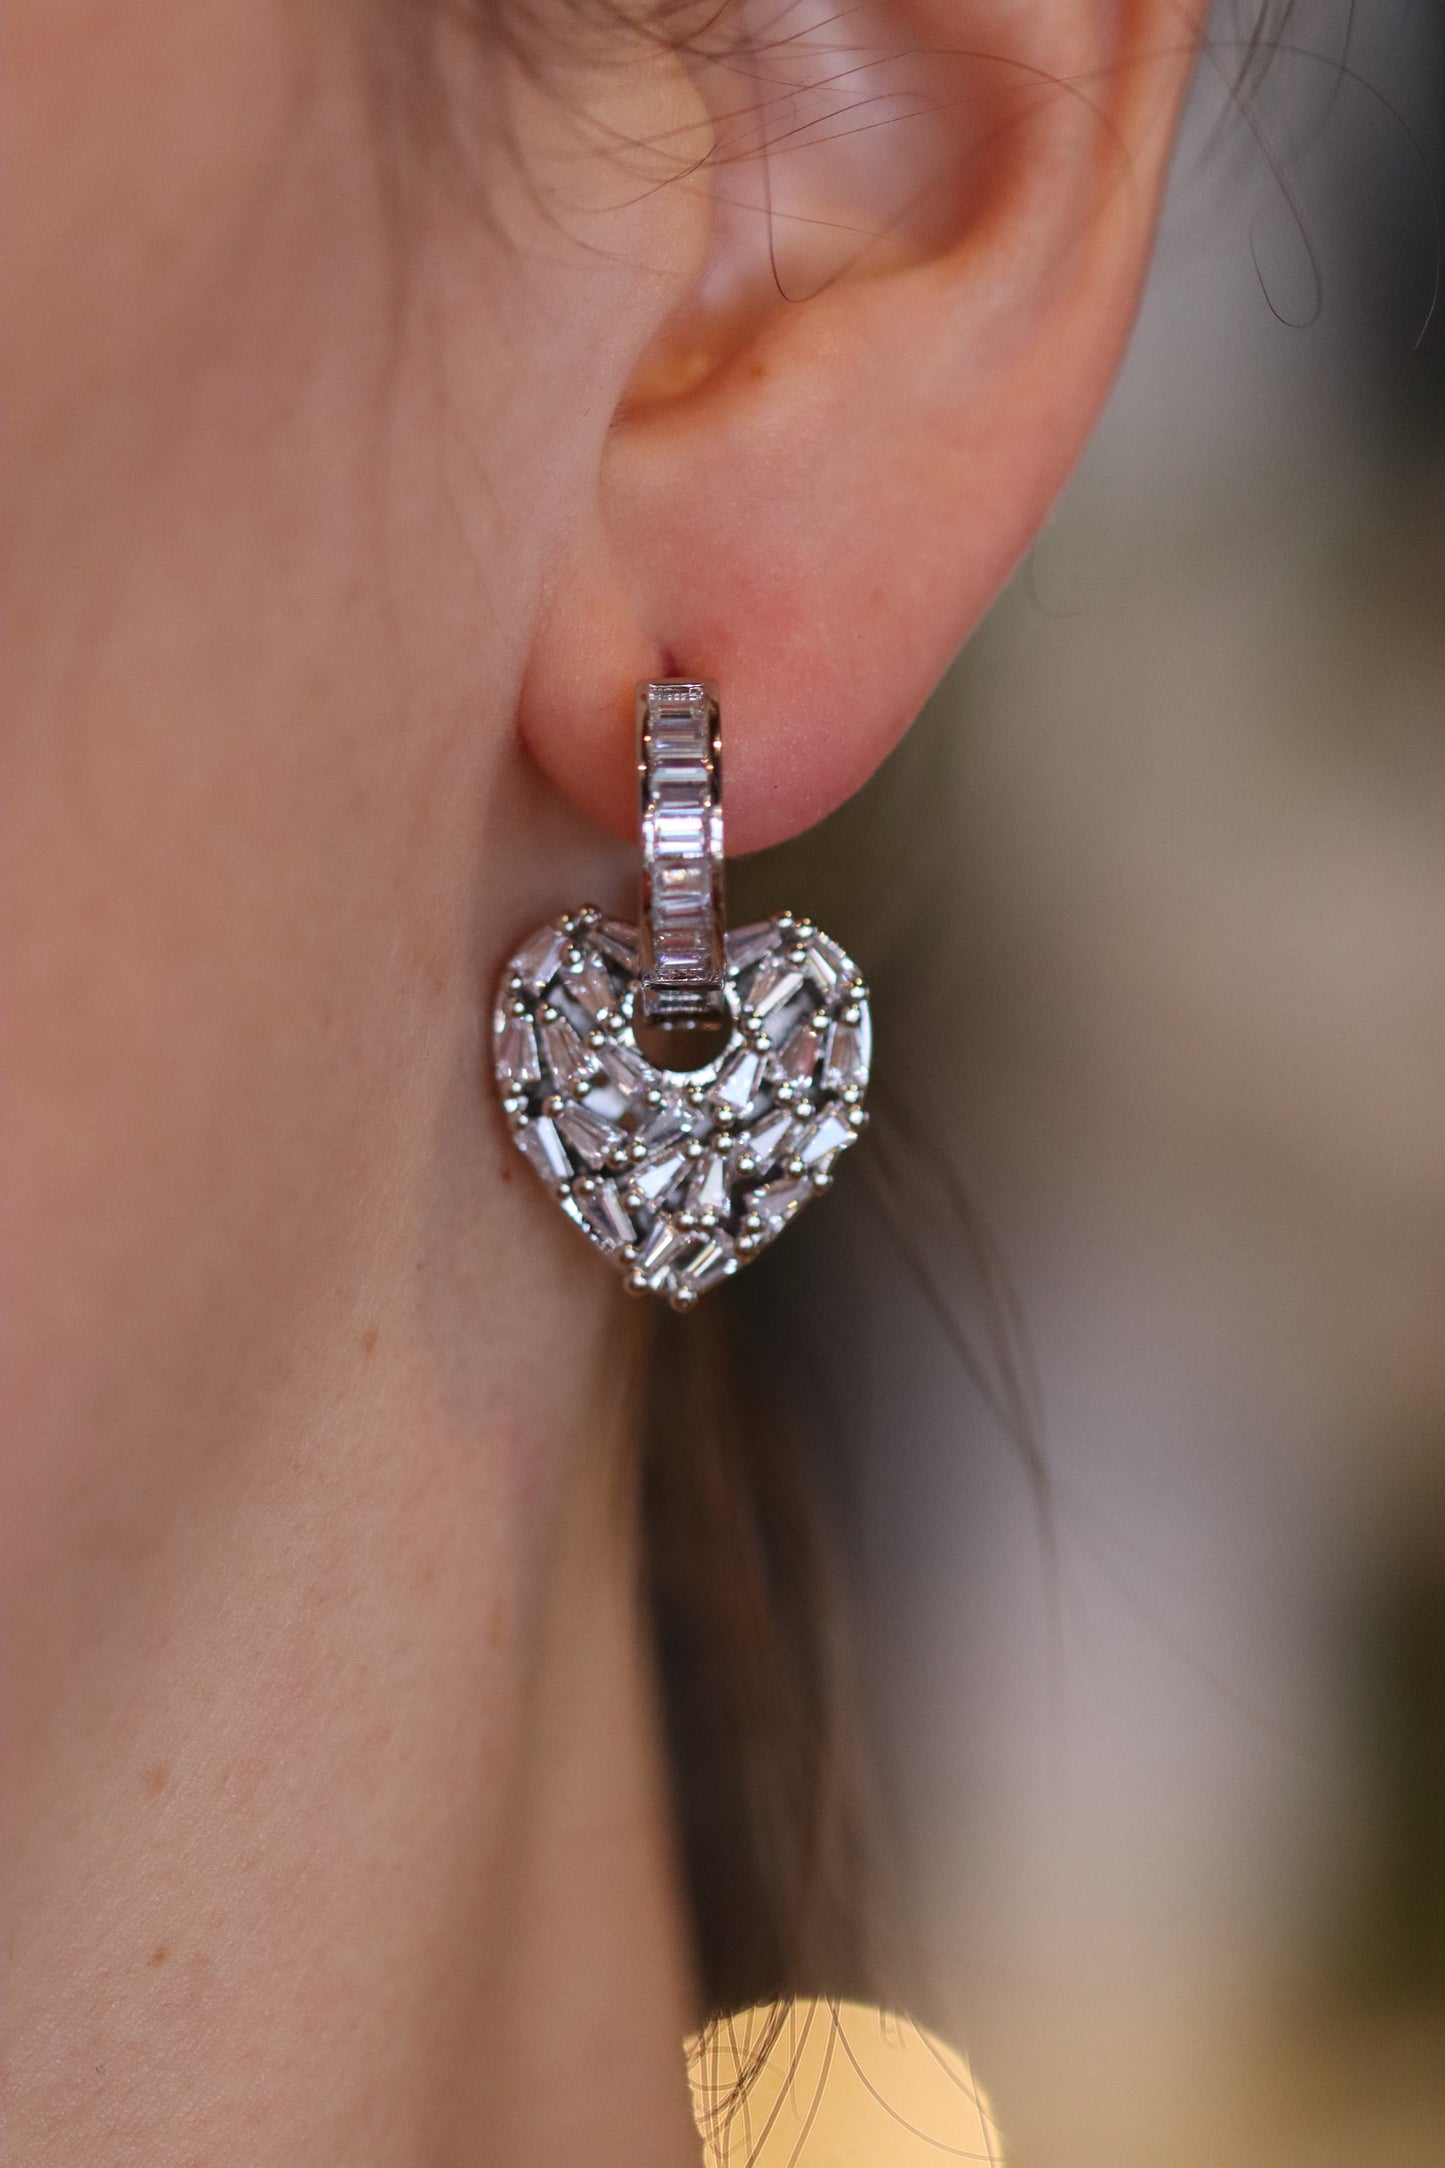 Heart Fragment Earrings - Platinum